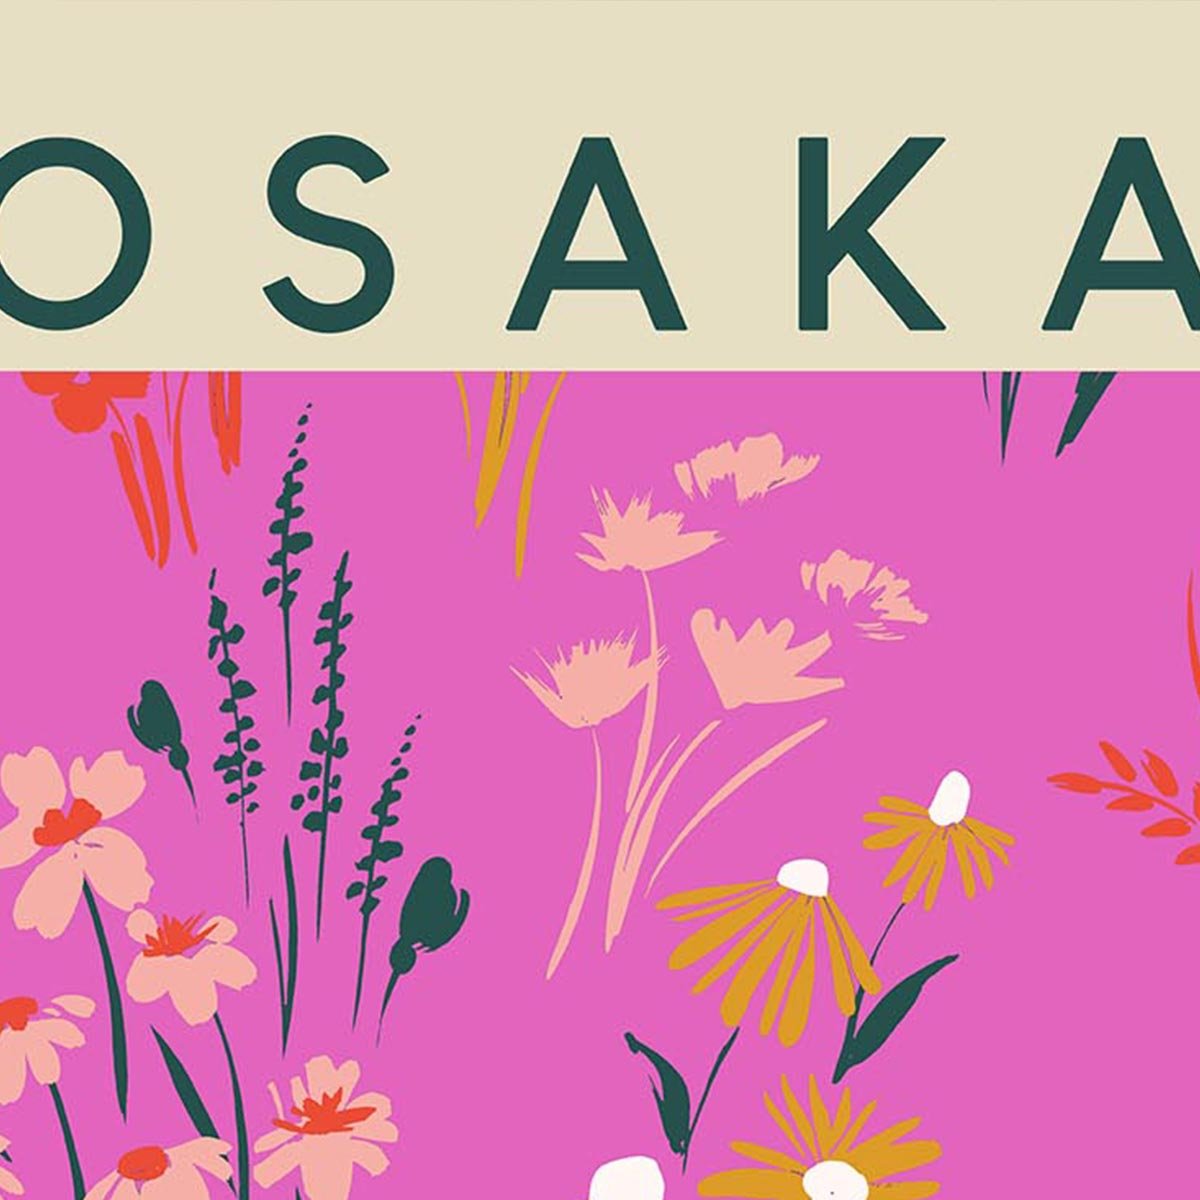 Osaka Flower Market Poster